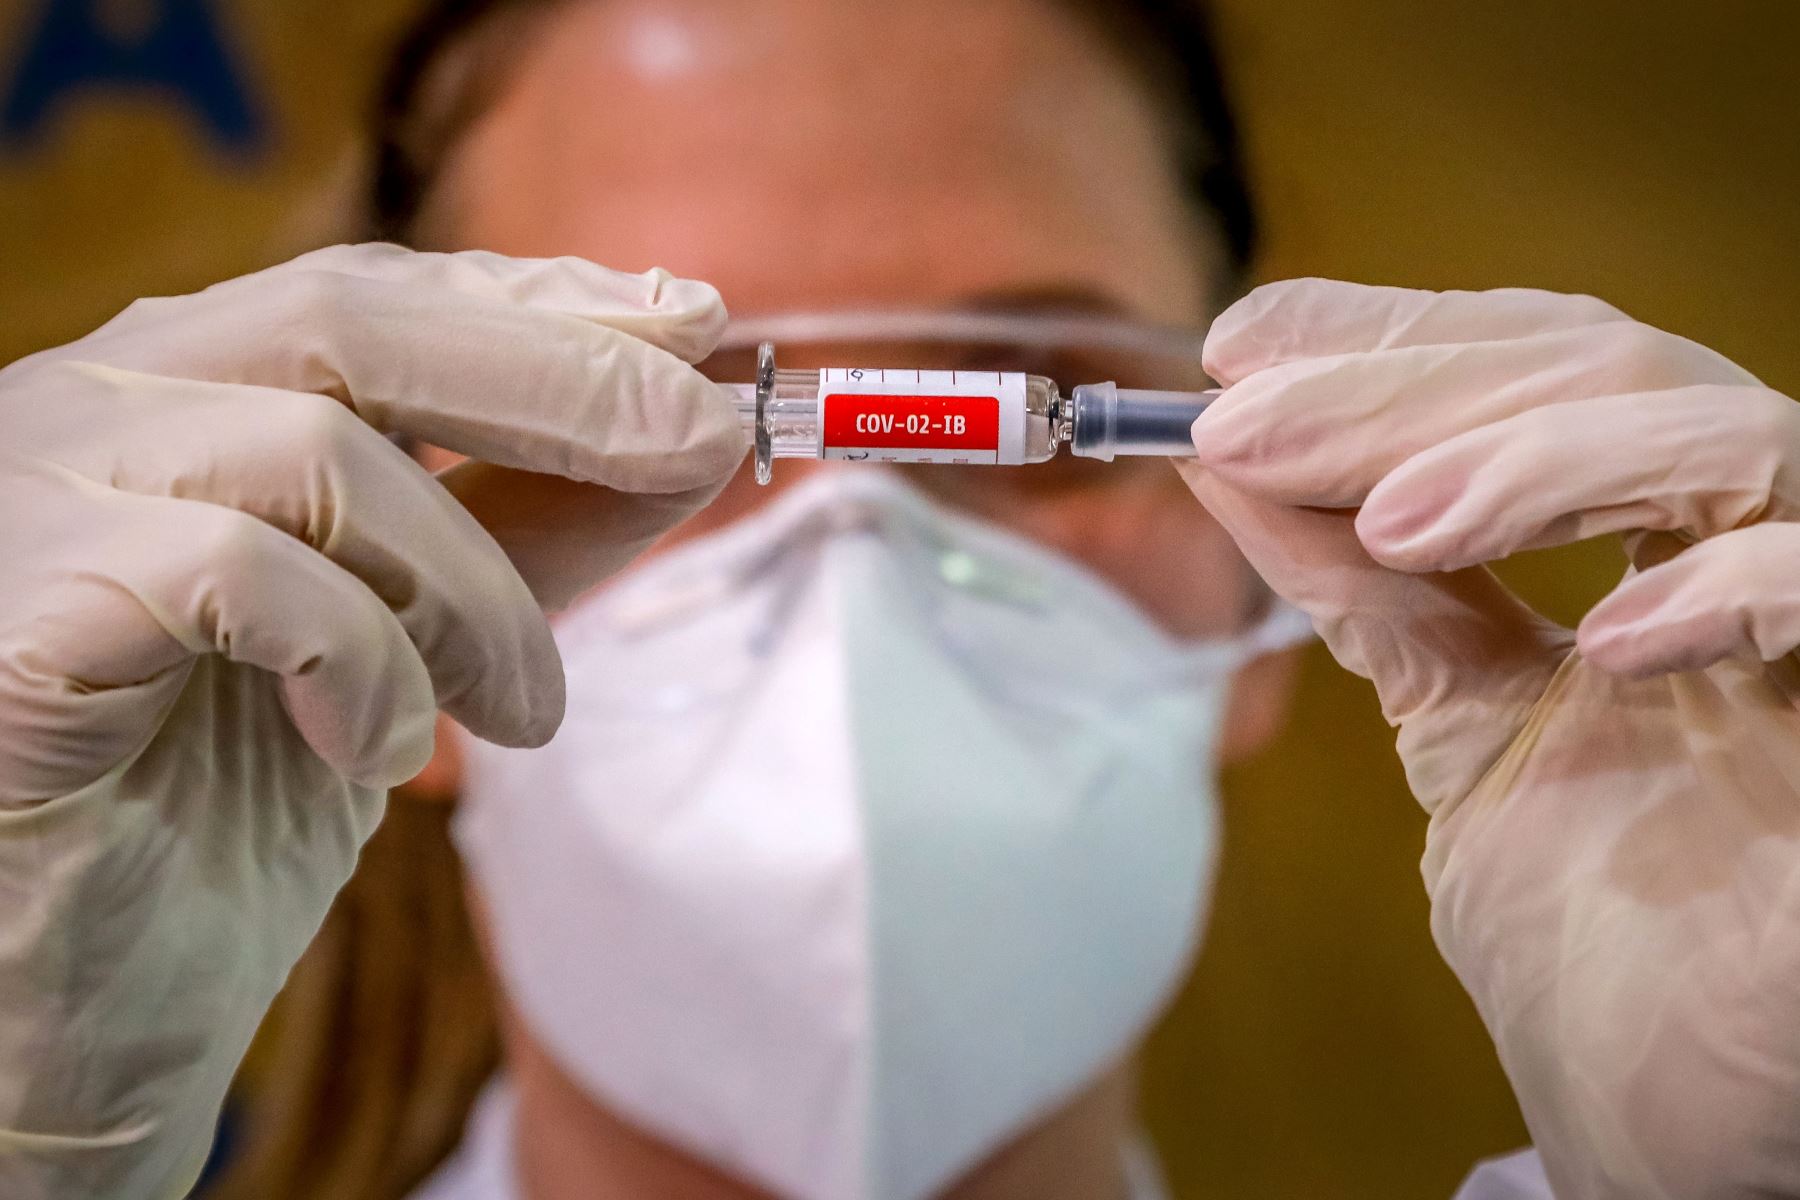 El inicio de la fase final de las pruebas de esta vacuna, en las que participarán más de 2,000 personas, estaba previsto para este miércoles, afirmó el presidente ruso. Foto: AFP